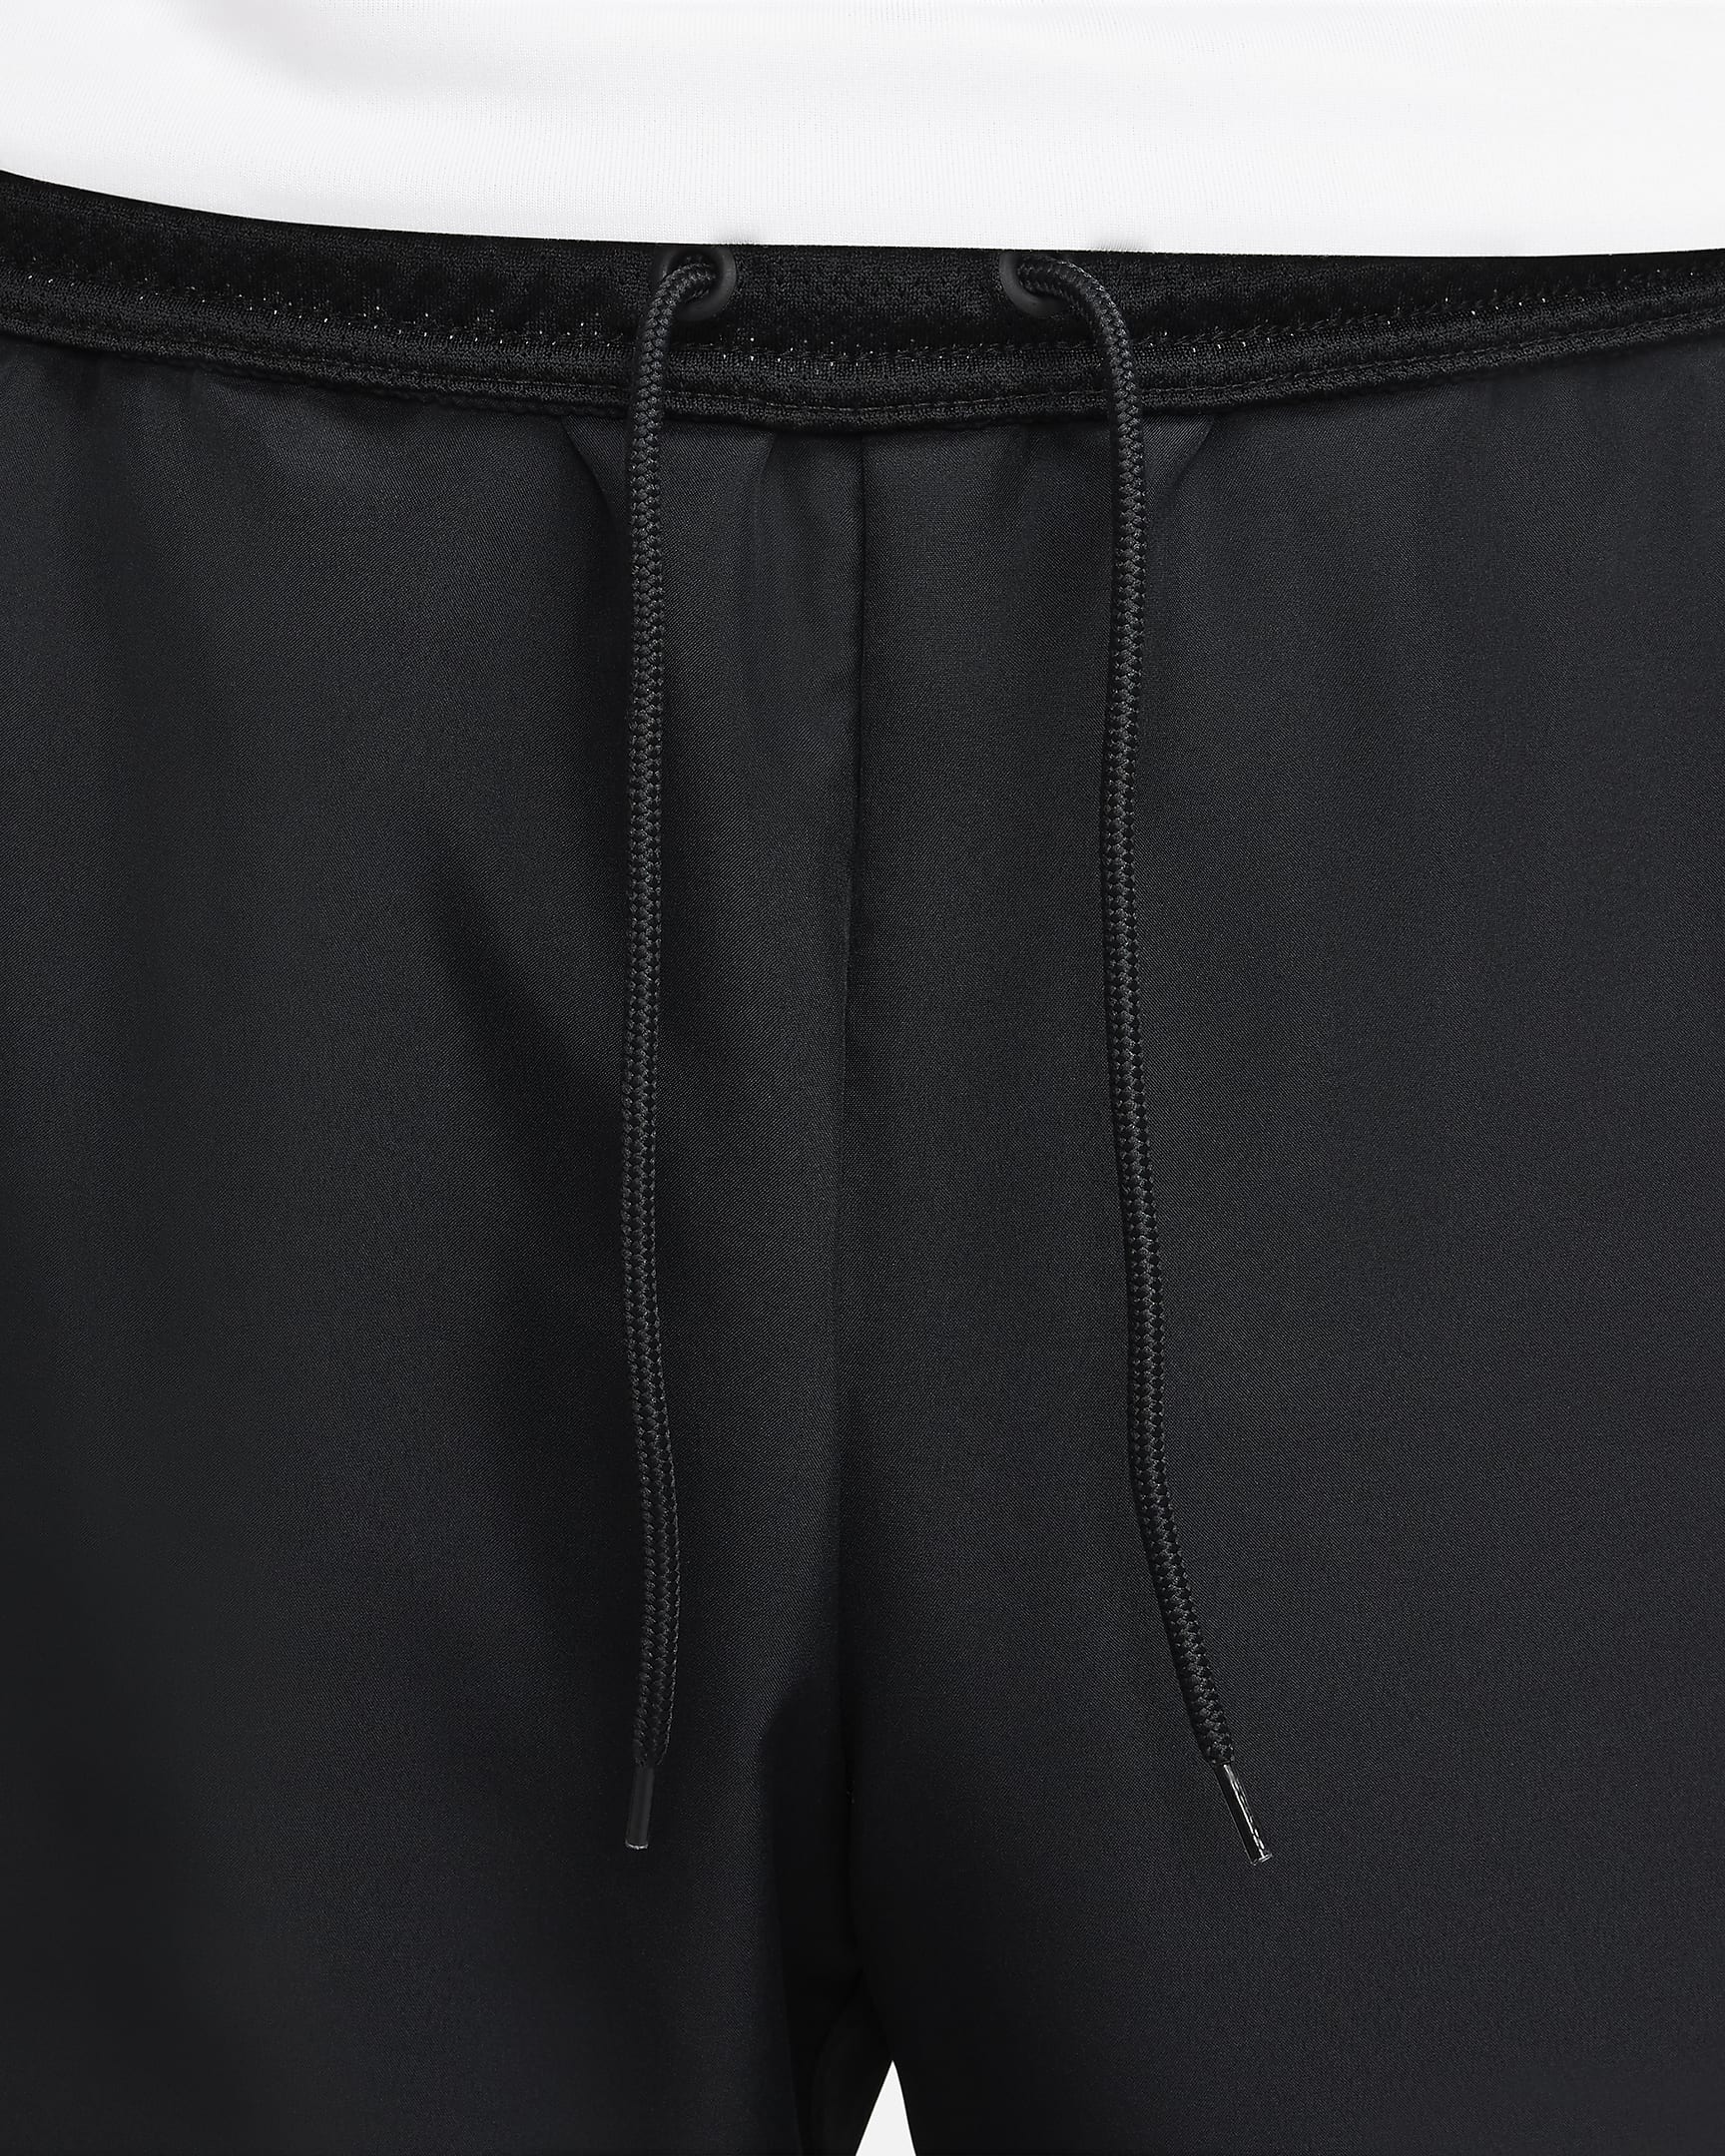 Pantalon de foot Nike Academy Dri-FIT pour homme - Noir/Noir/Blanc